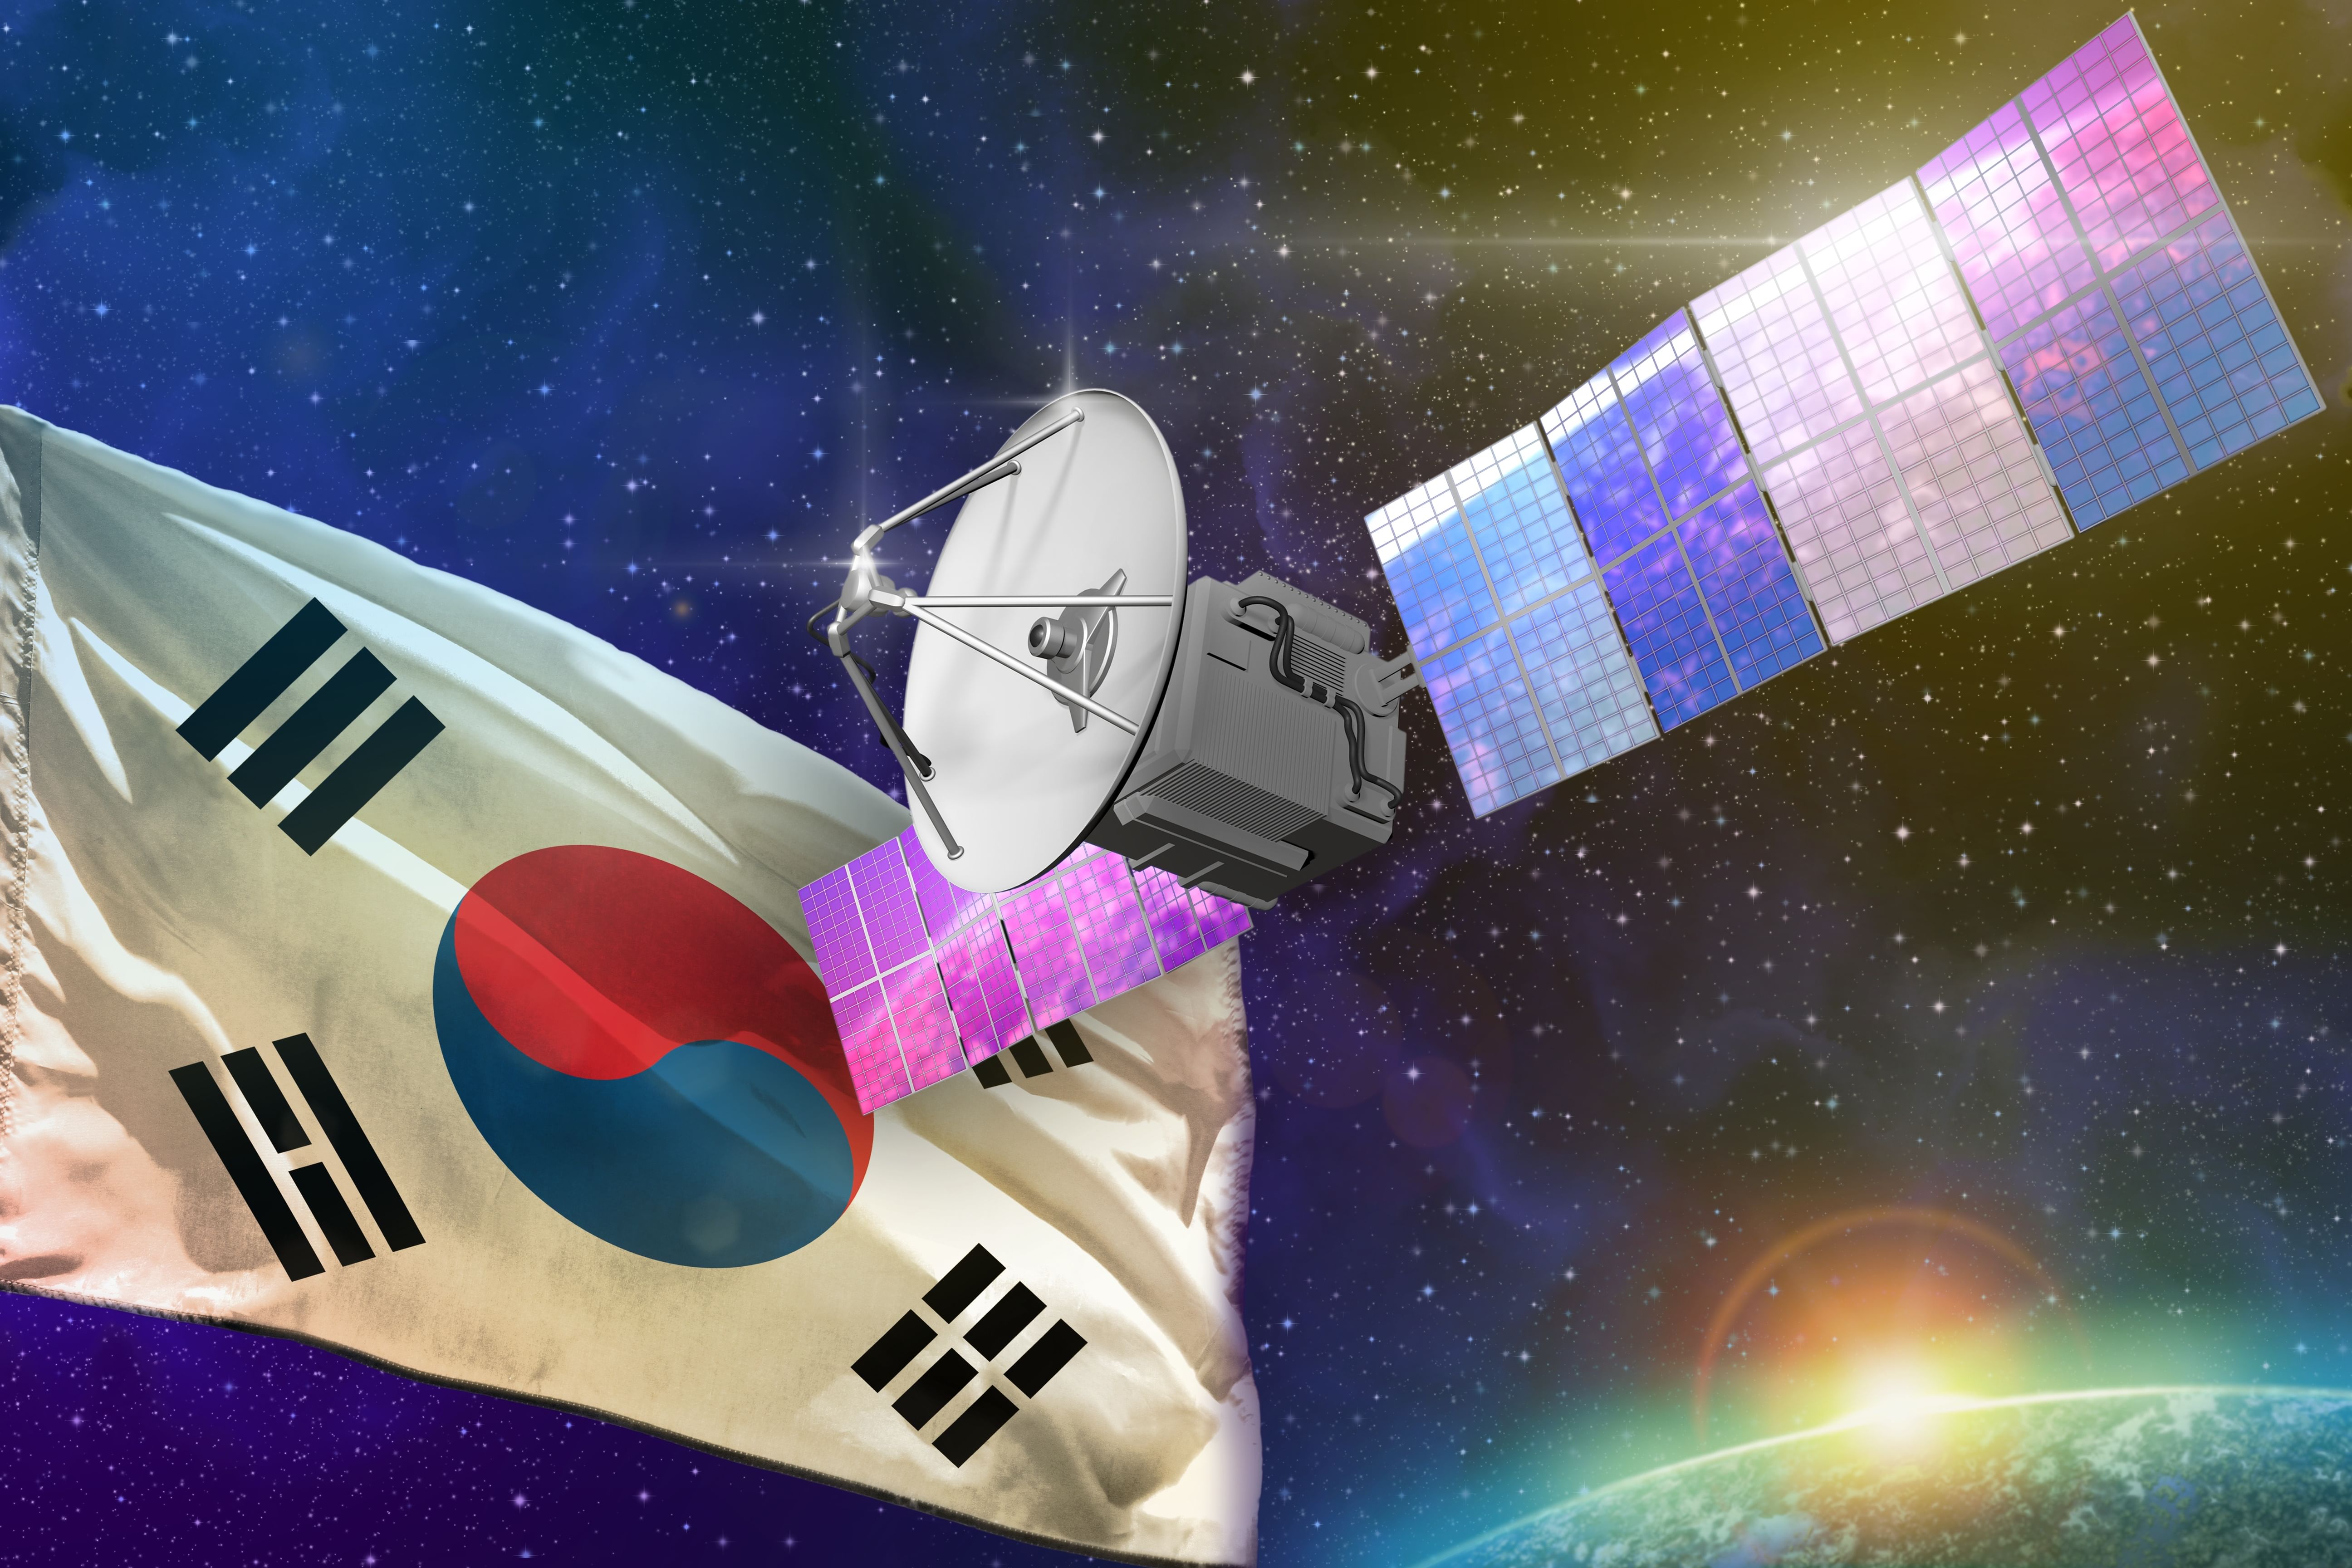 كوريا الجنوبية تطلق قمرا صناعيا نانويا في المدار، وذلك ضمن مشروعها لإنشاء كوكبة من الأقمار الصناعية  .